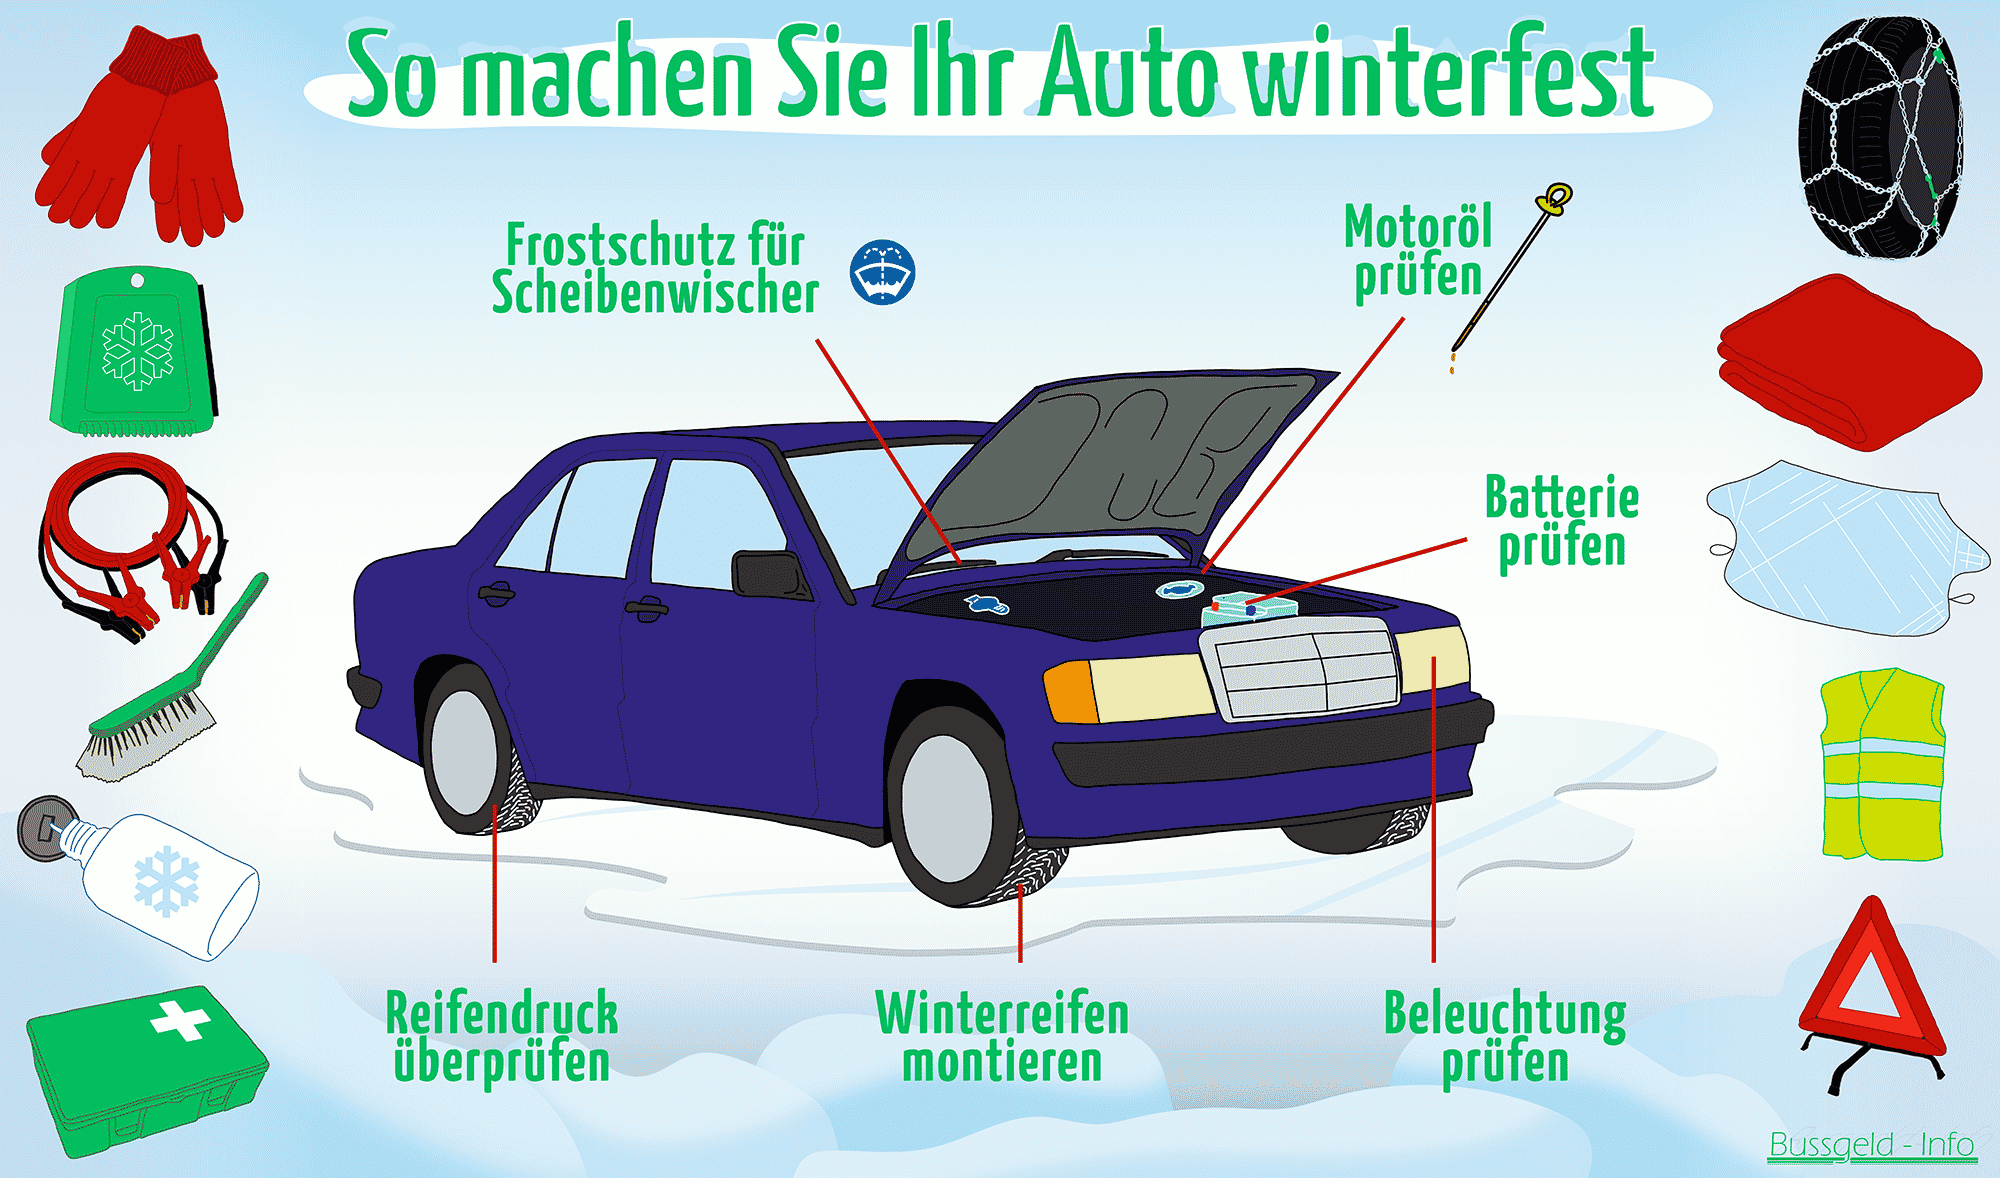 Auto winterfest machen: Die 6-Punkte-Checkliste